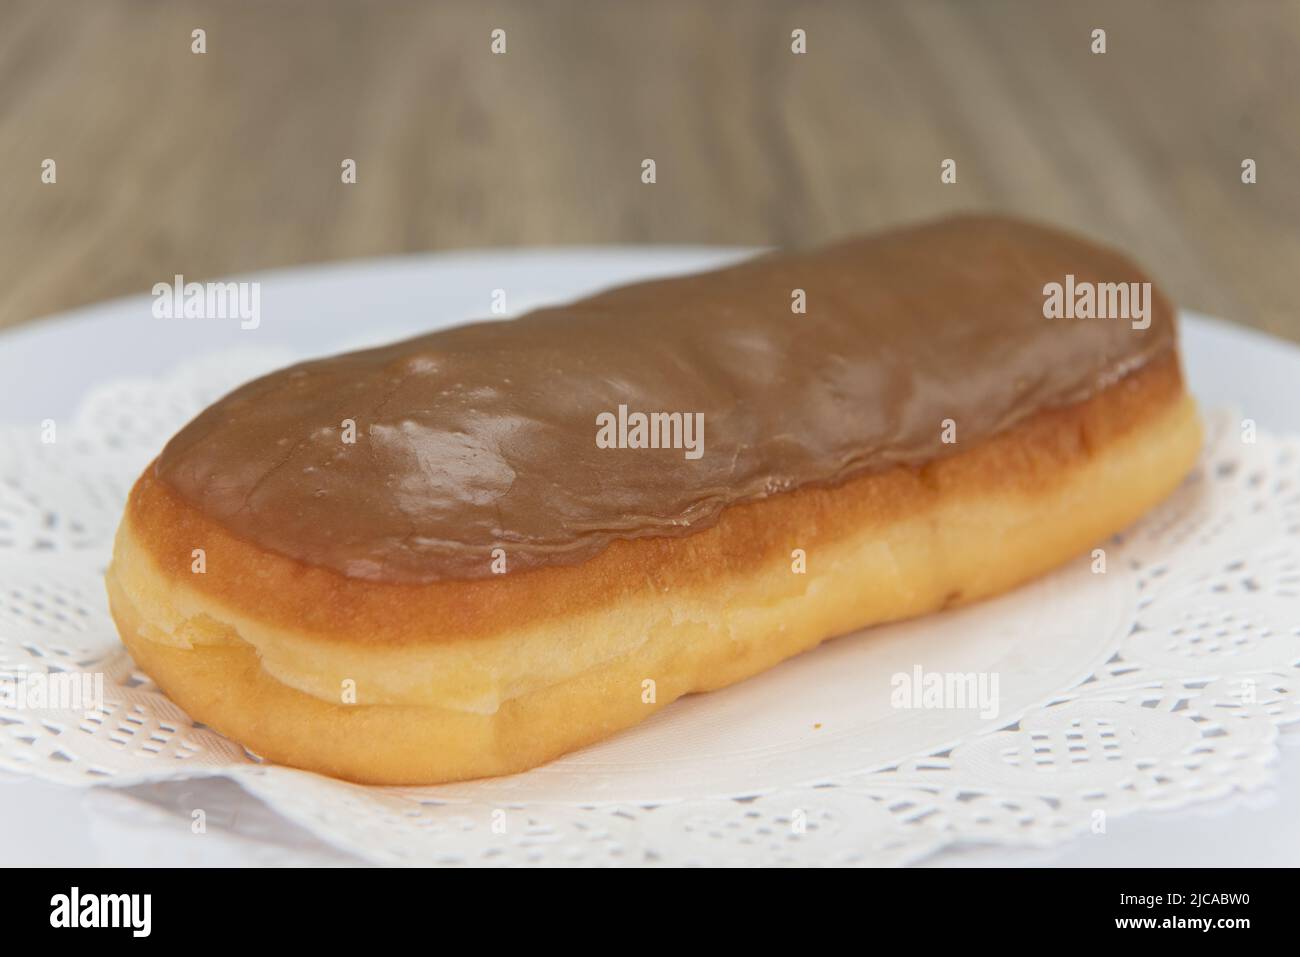 Appétissant, le donut de la boulangerie, servi sur une assiette, est frais et servi au four. Banque D'Images